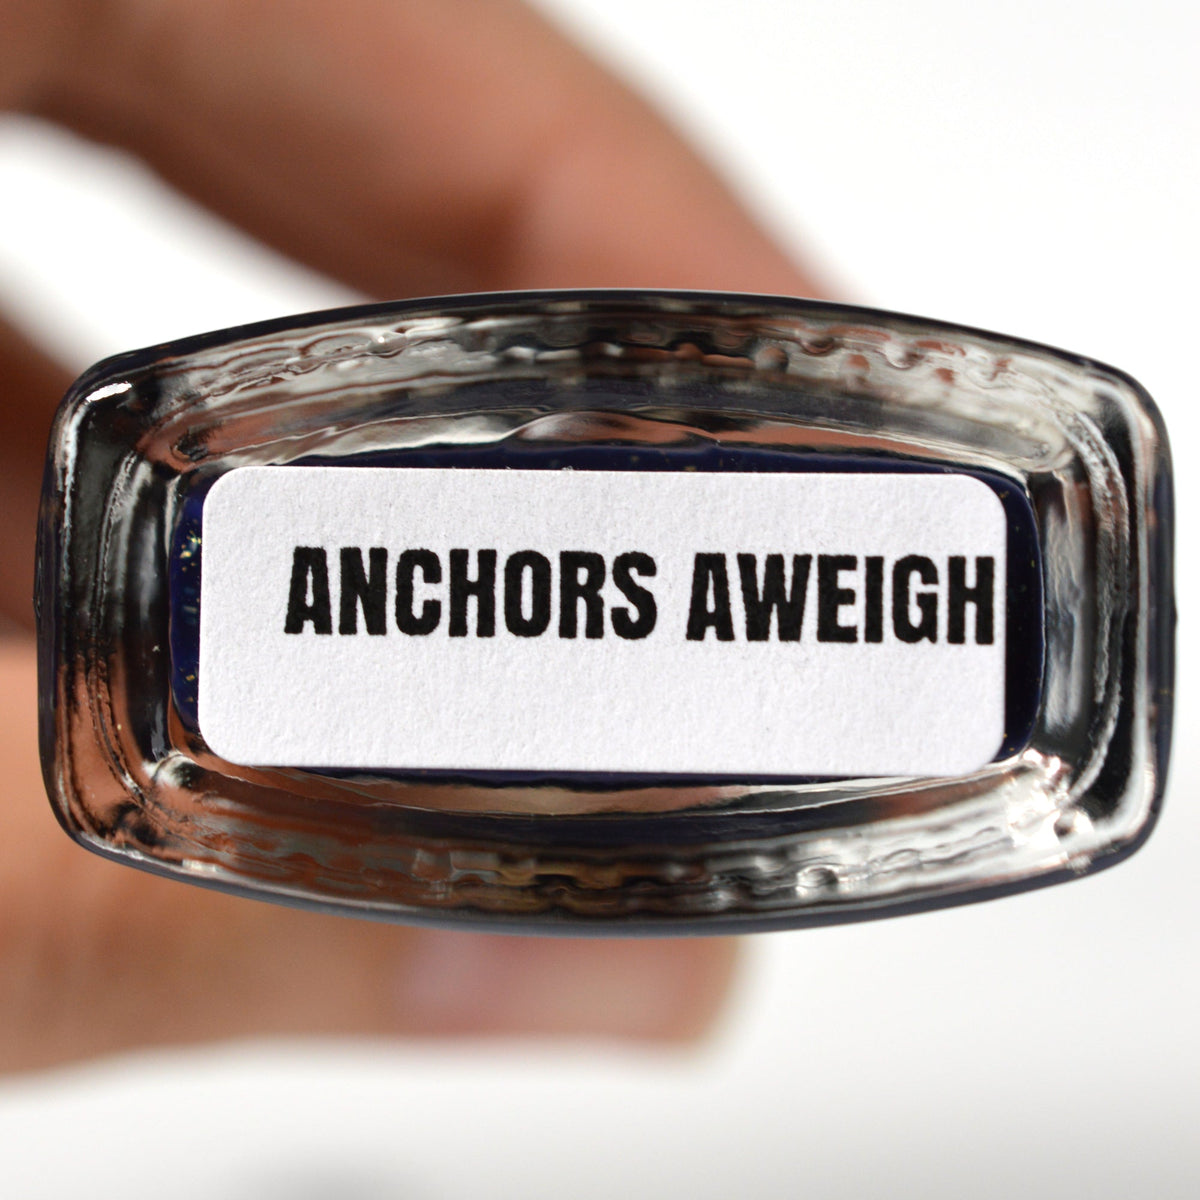 Anchors Aweigh - Nail Polish - BLUSH